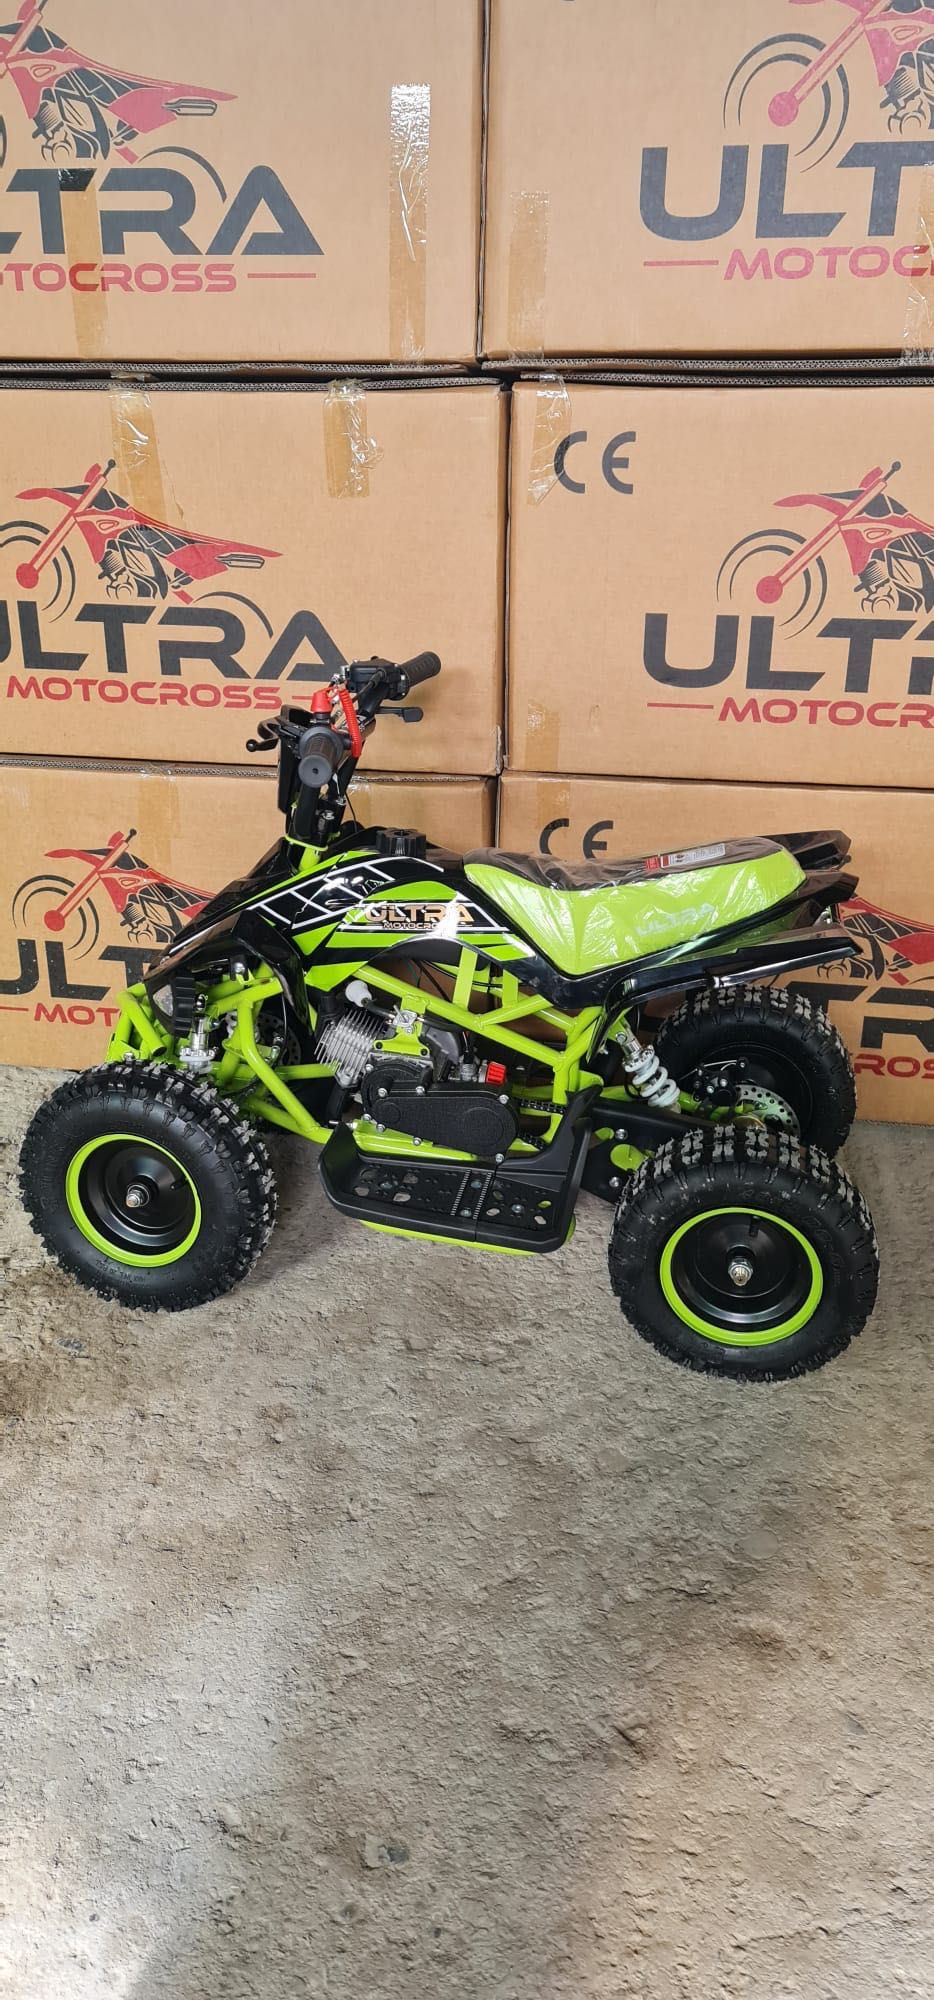 ATV Ultra adus din Germania nou cu garanție